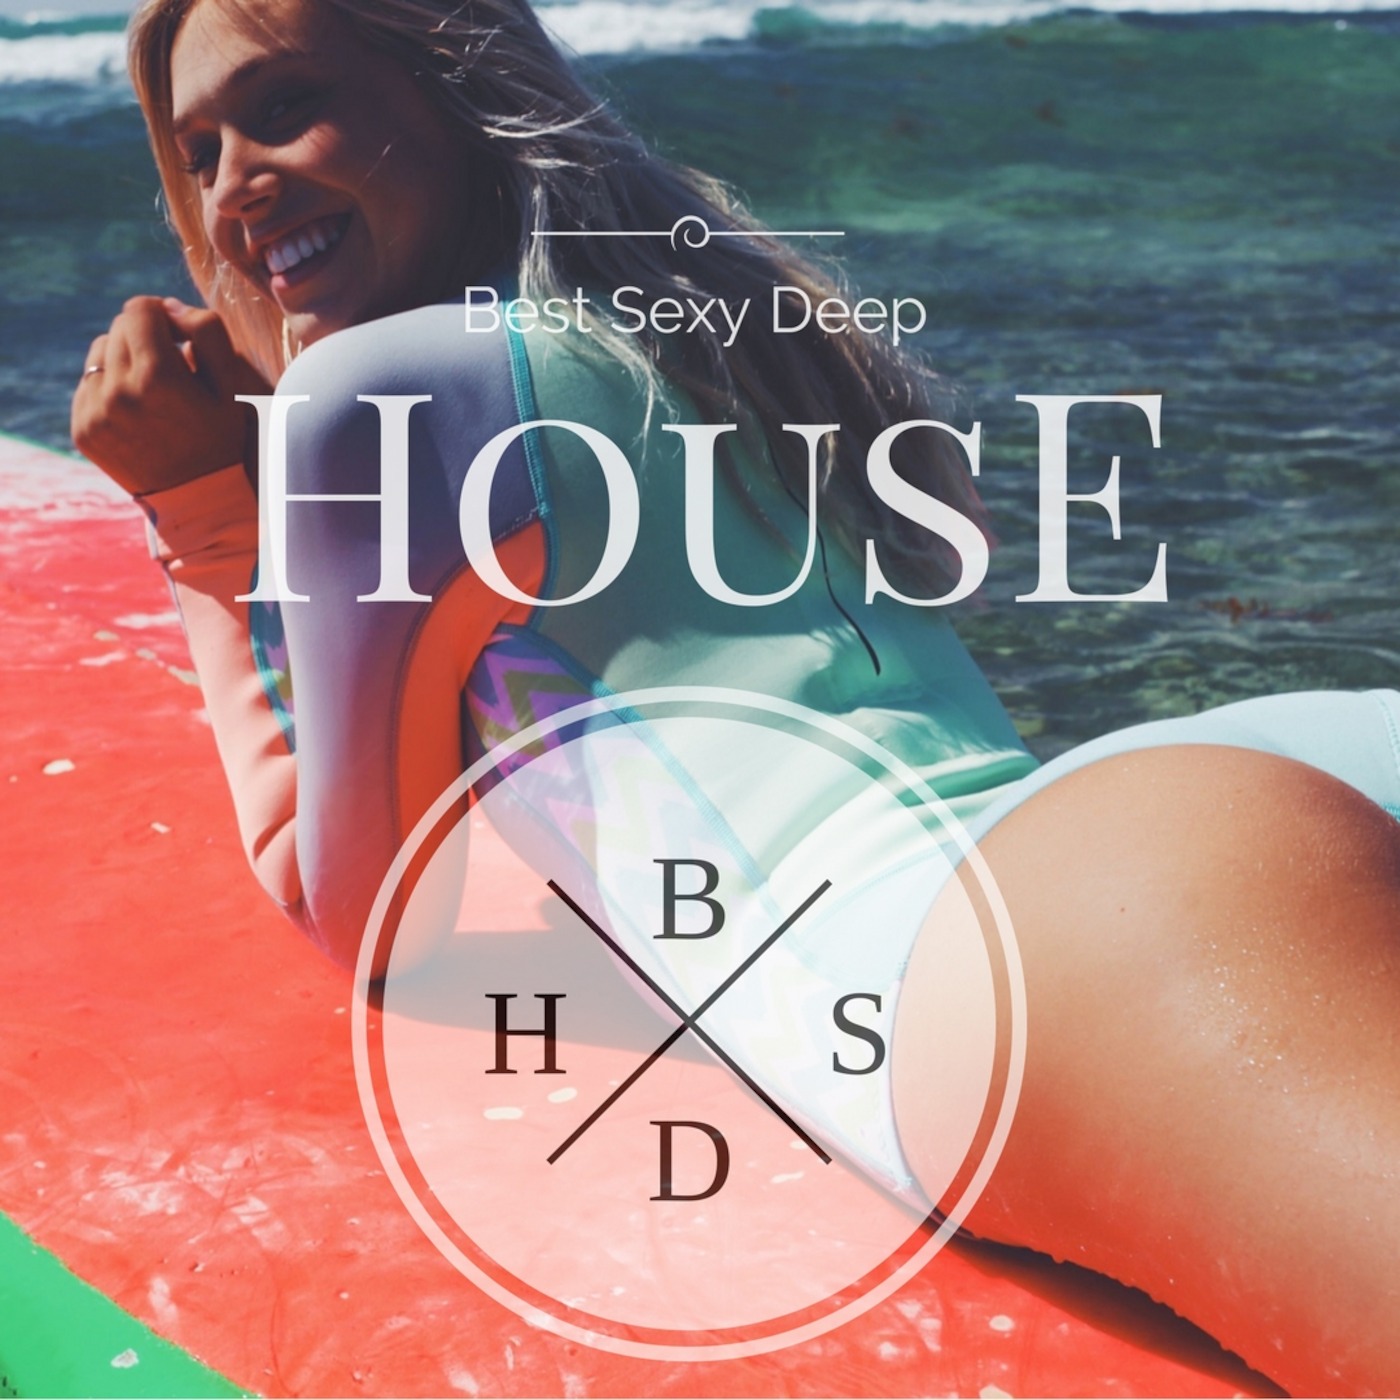 Best Sexy Deep House November 2017 Guest Dr Love Autumn 2017 Chill ♦ Relax ♦ Remixes